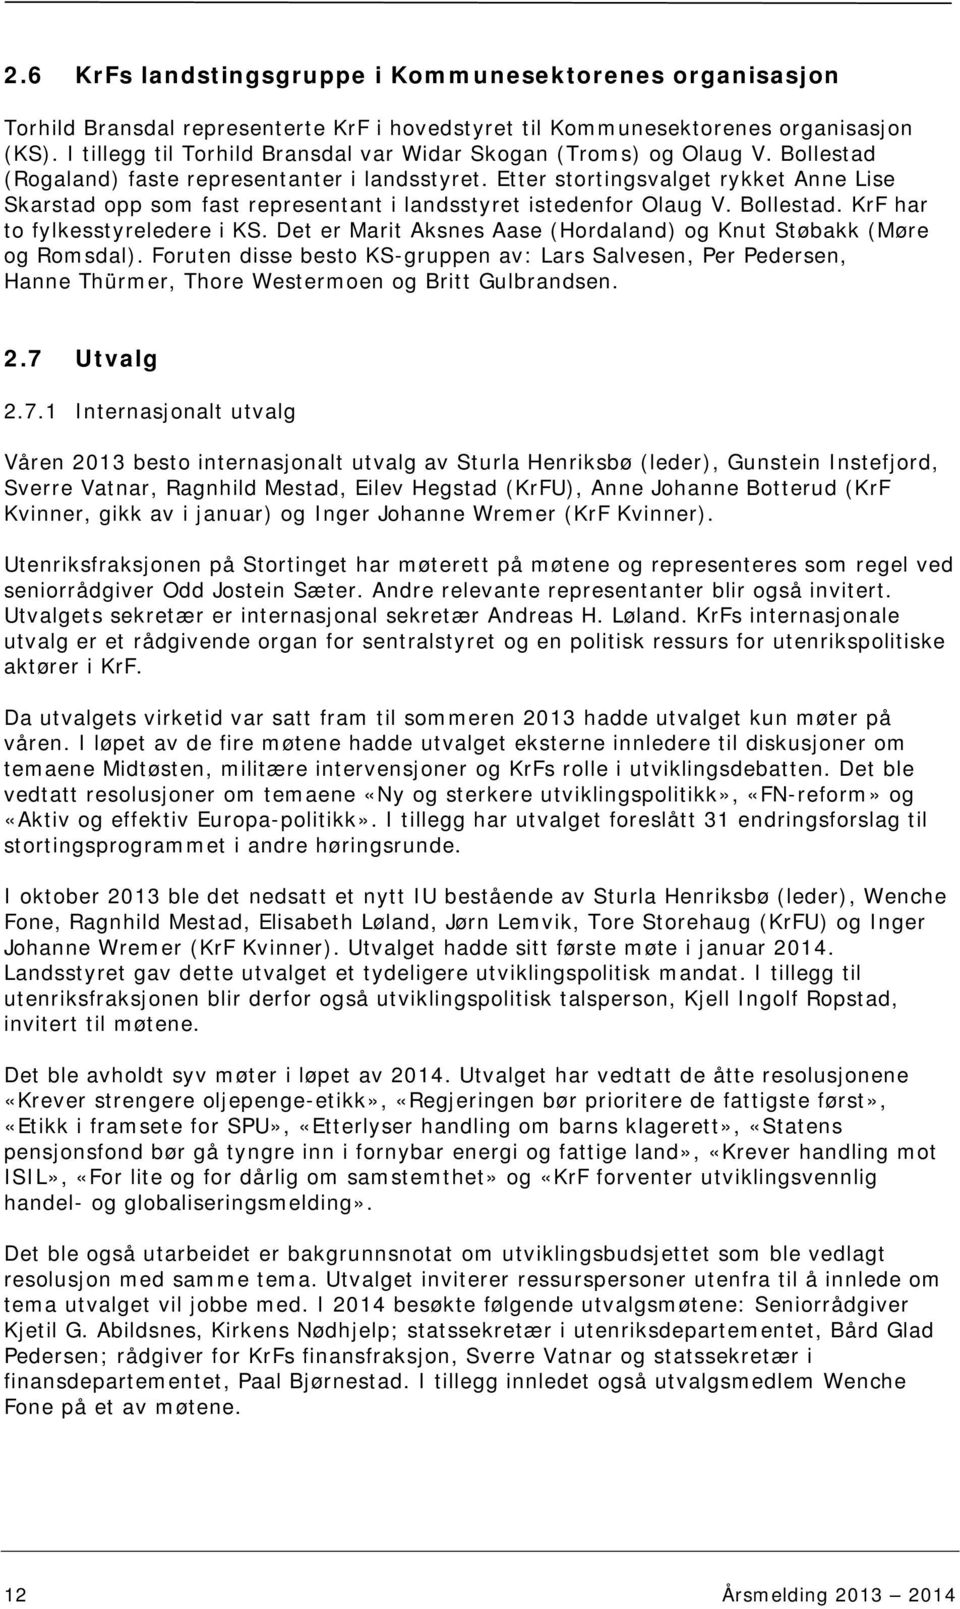 Etter stortingsvalget rykket Anne Lise Skarstad opp som fast representant i landsstyret istedenfor Olaug V. Bollestad. KrF har to fylkesstyreledere i KS.